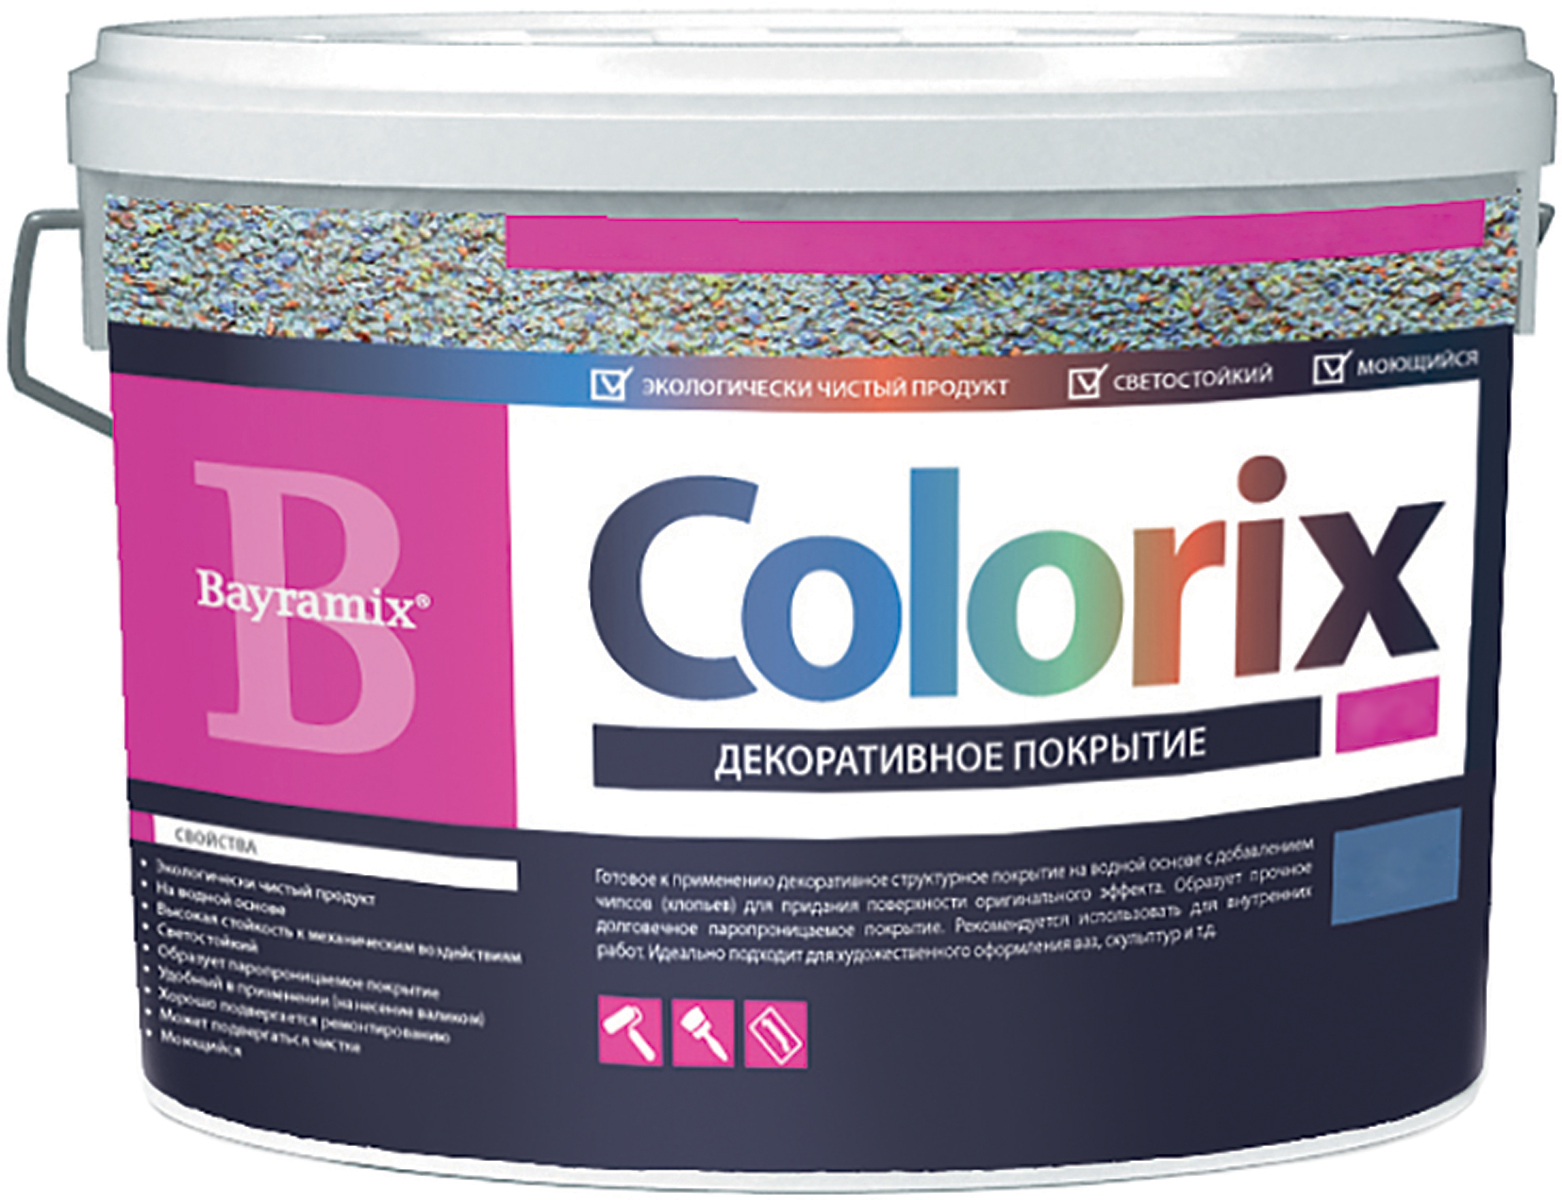 Colorix (Колорикс) покрытие с цветными чипсами (флоками) перламутровый эффект, (CLP214-CLP419), 9 кг